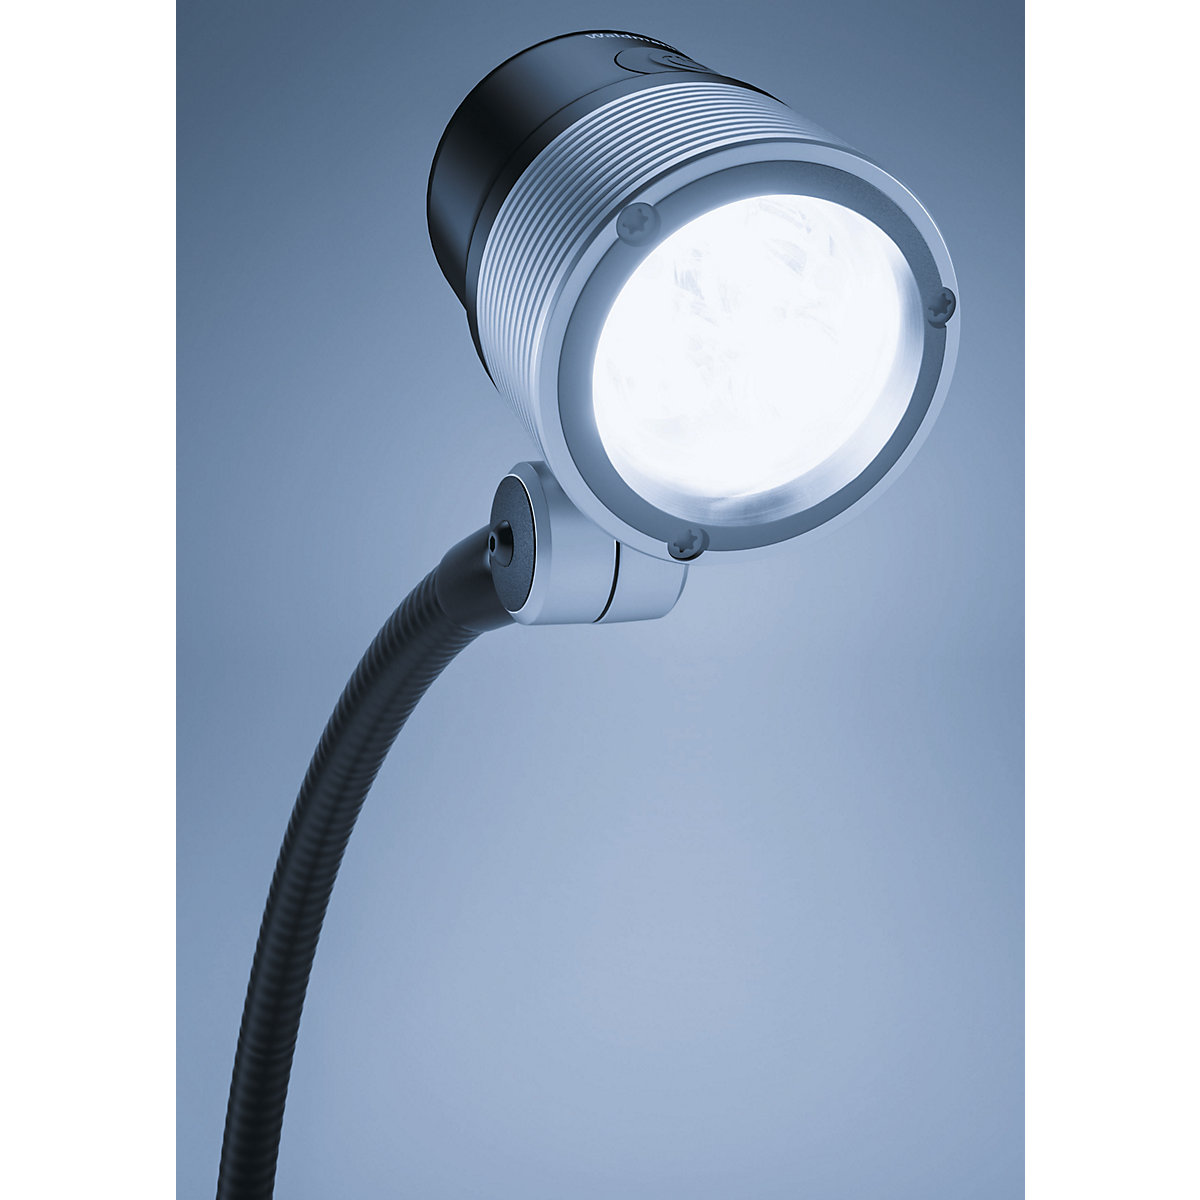 Lampă LED cu braț flexibil pentru utilaje – Waldmann (Imagine produs 2)